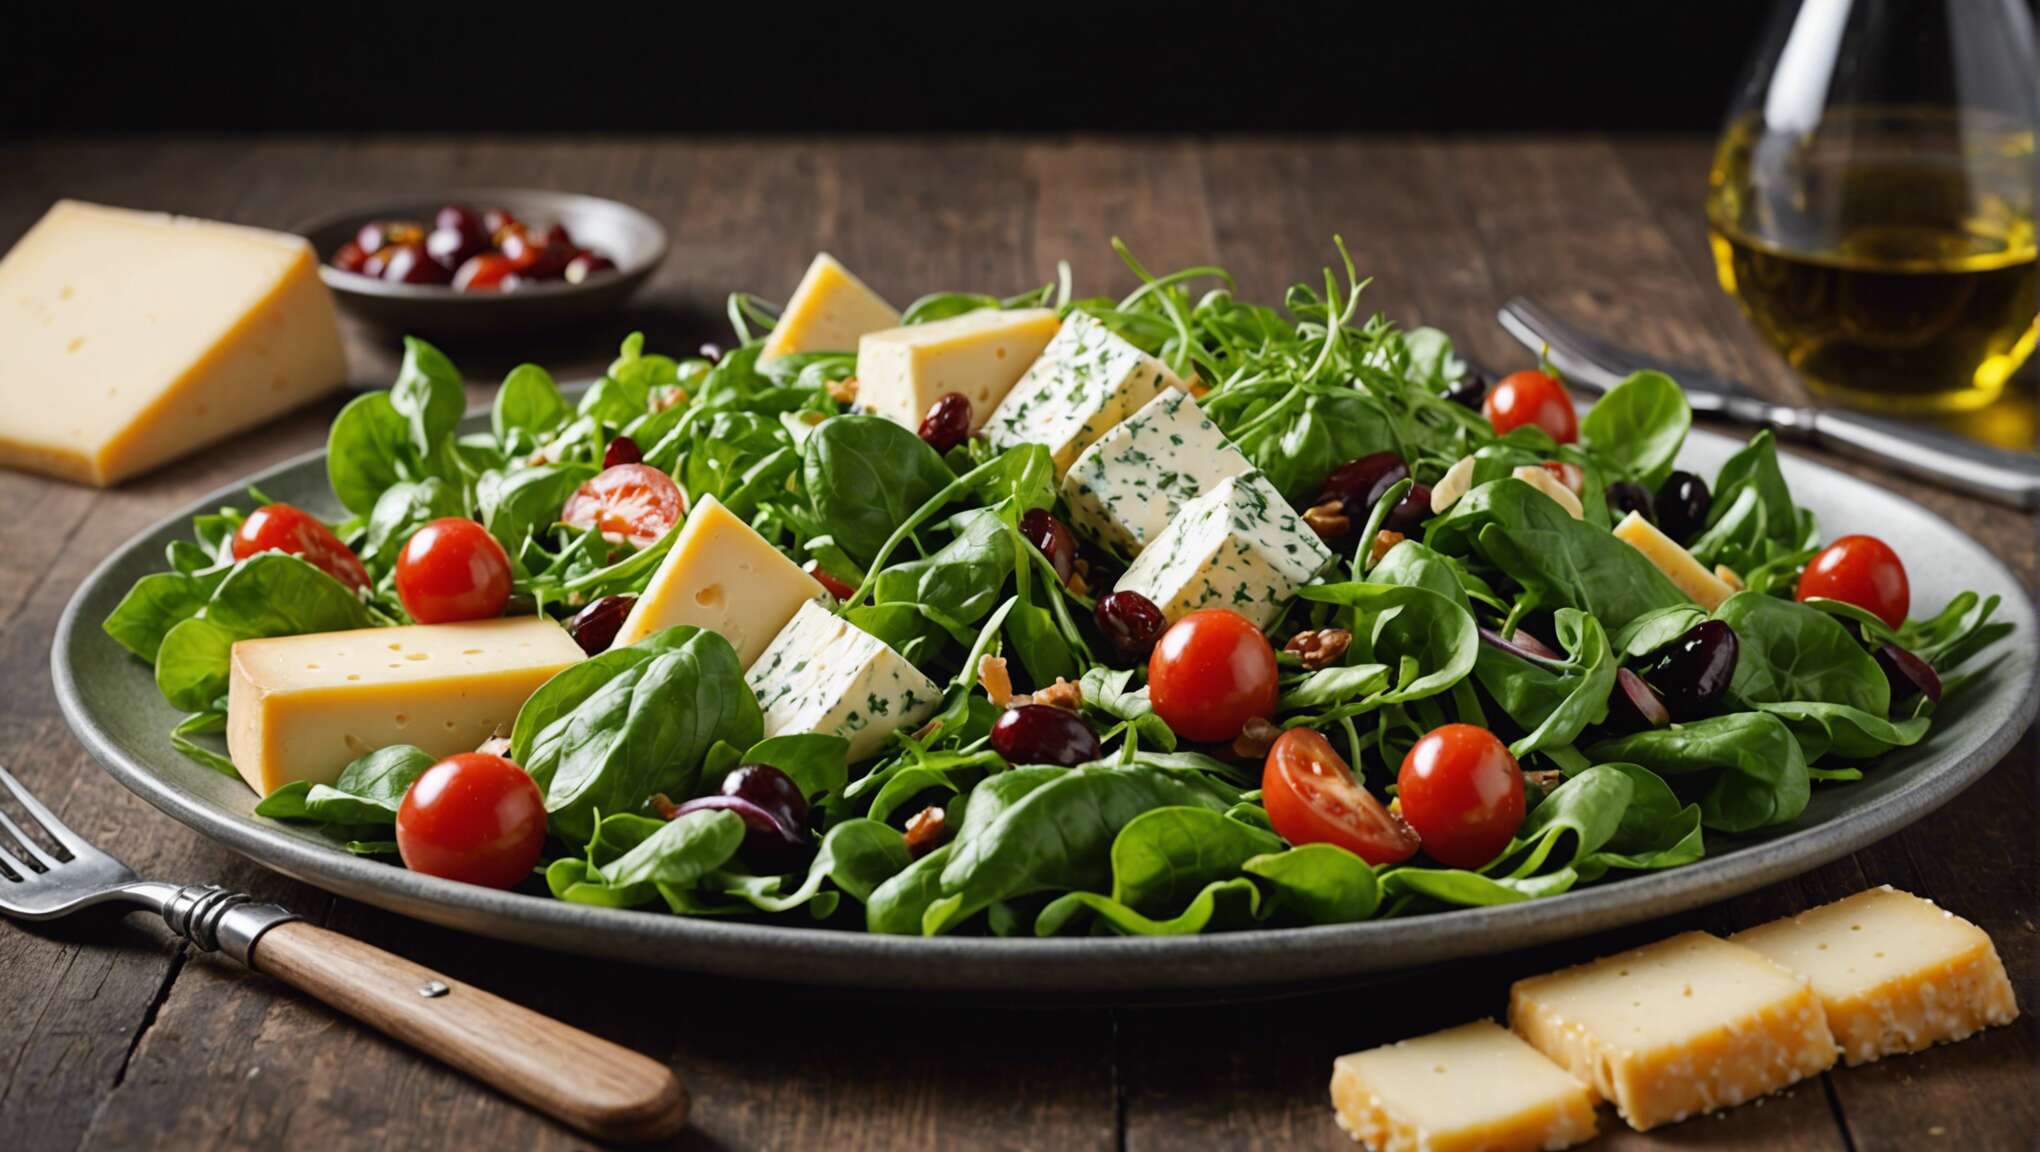 Des astuces pour un assaisonnement parfait de votre salade au fromage